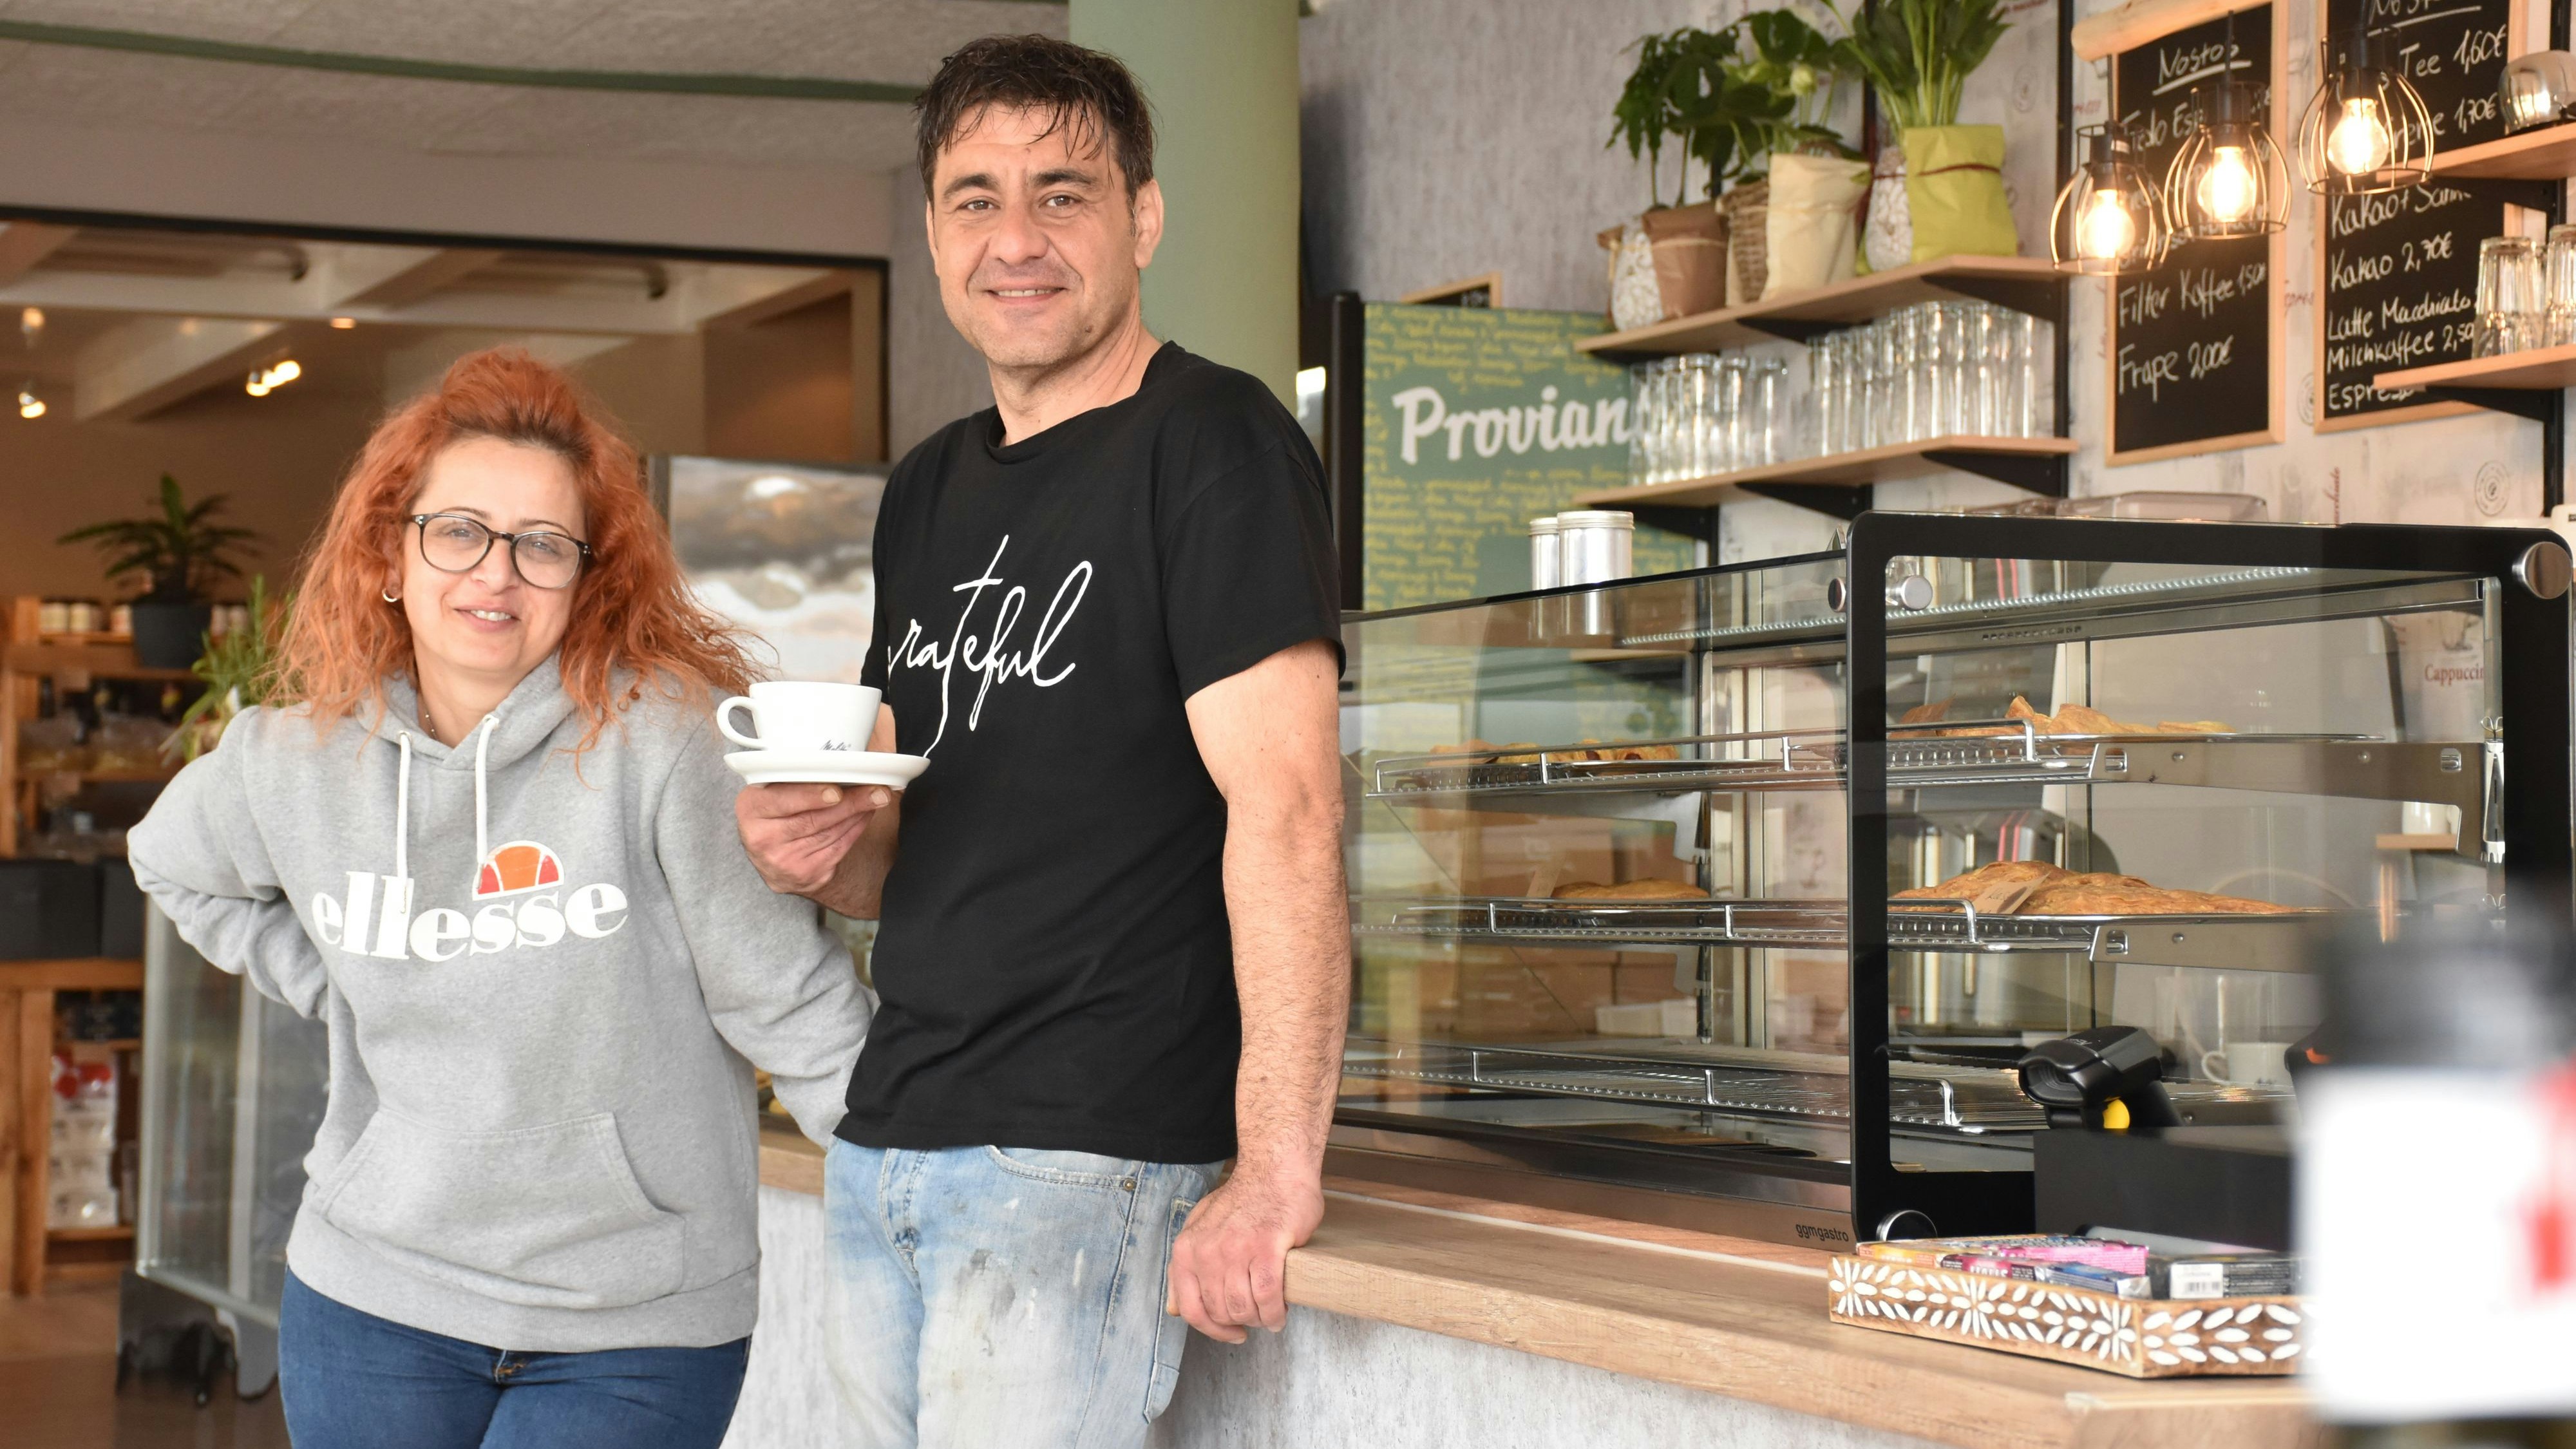 Sie haben ein Gastgeber-Herz: Petros Kostidis und seine Frau Efi Xanthopoulou freuen sich auf viele Kunden in ihrem neuen Geschäft mit Café "Nostos Delicatessen". Foto: Timphaus